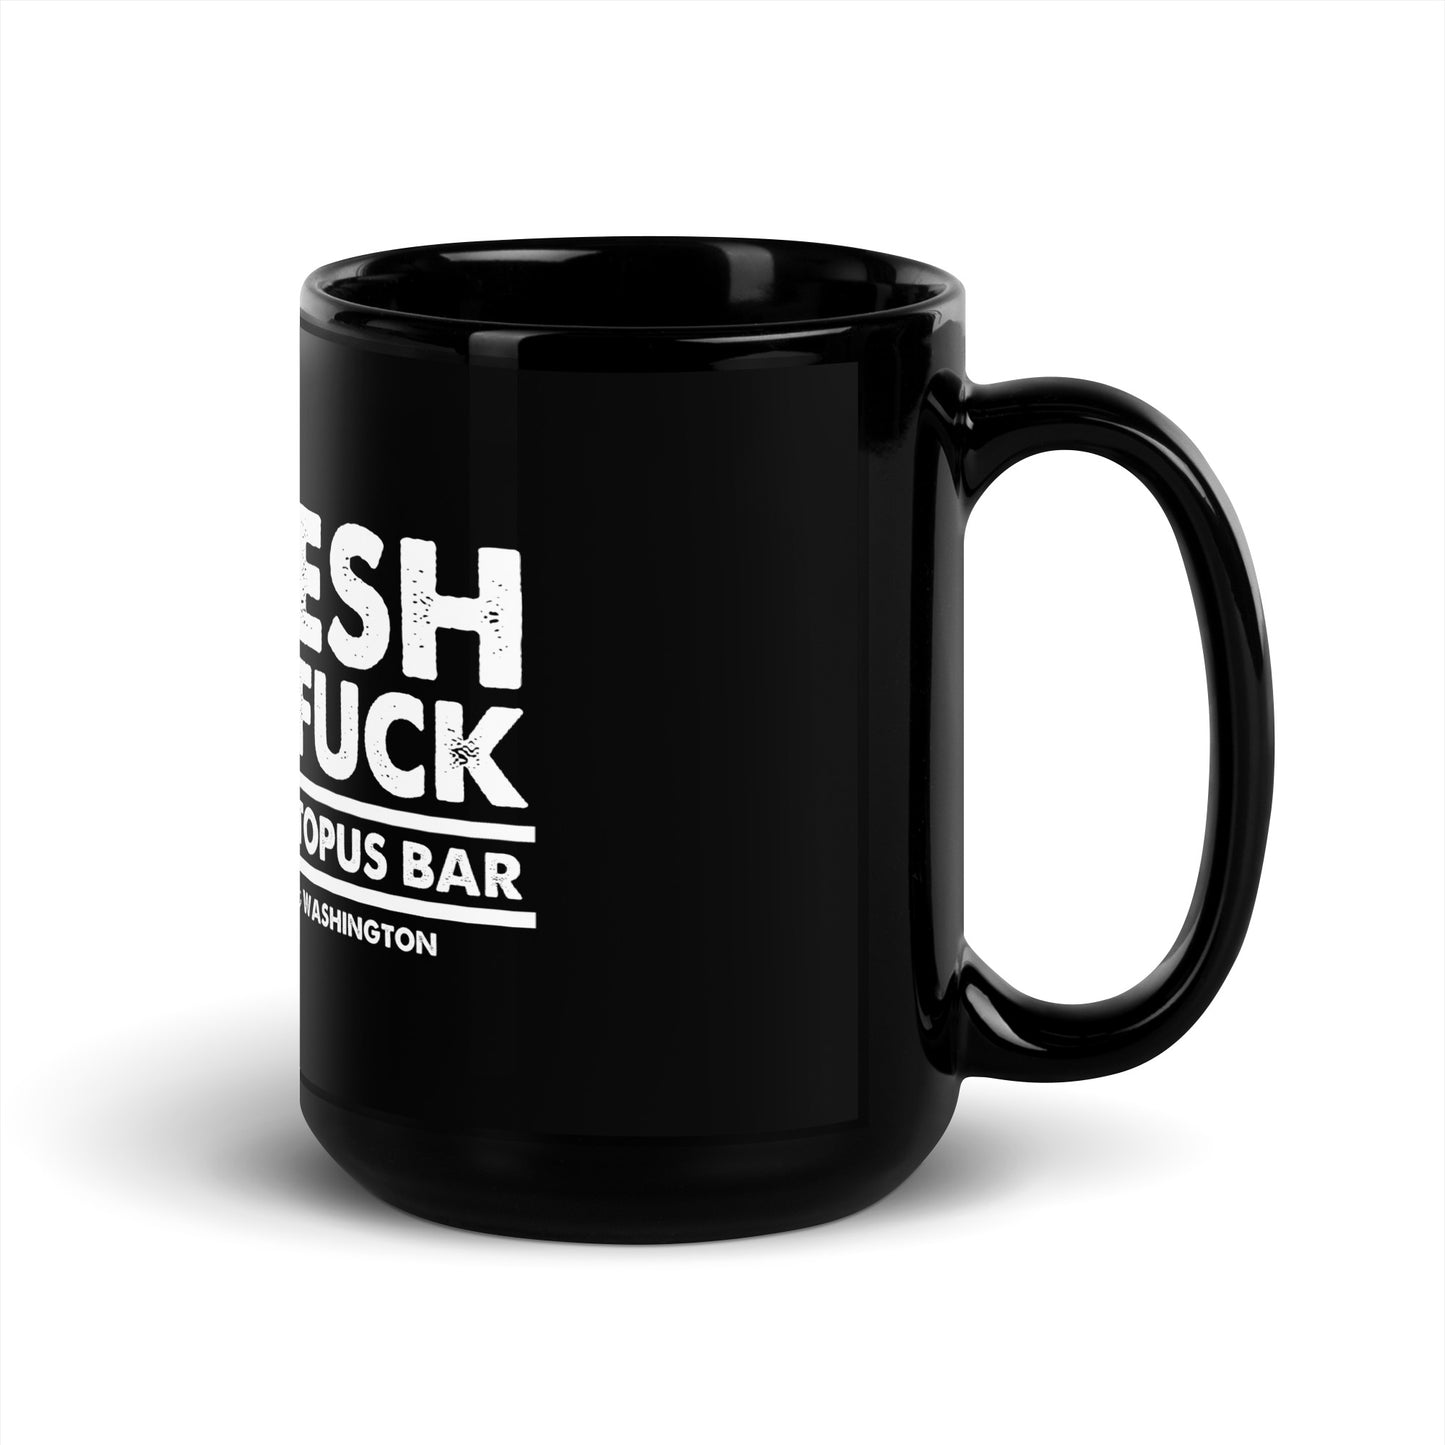 fresh as fuck black glossy mug